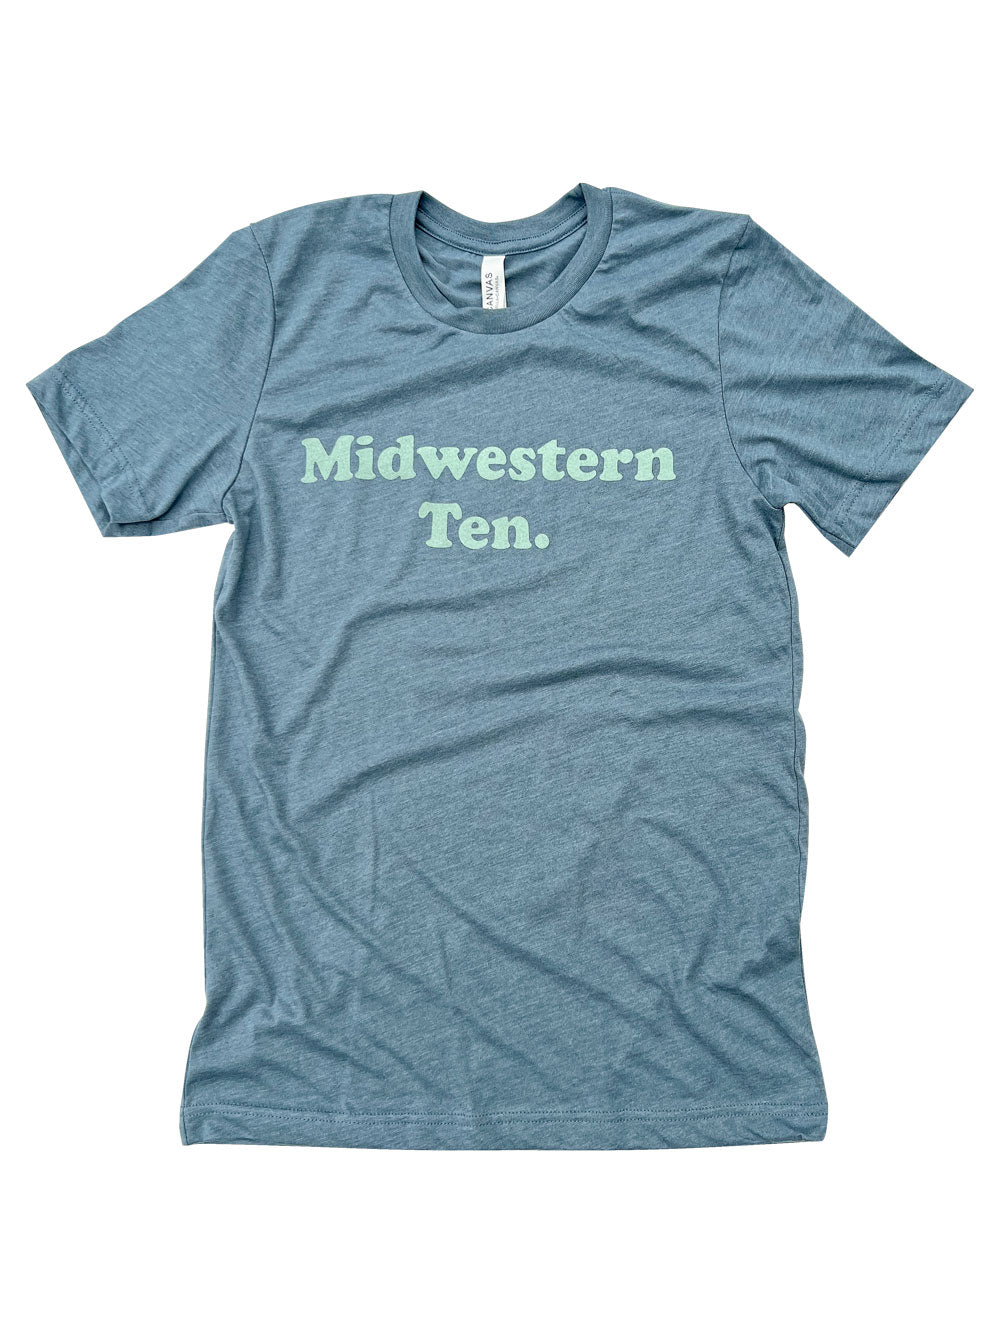 Midwestern Ten slate heather t-shirt